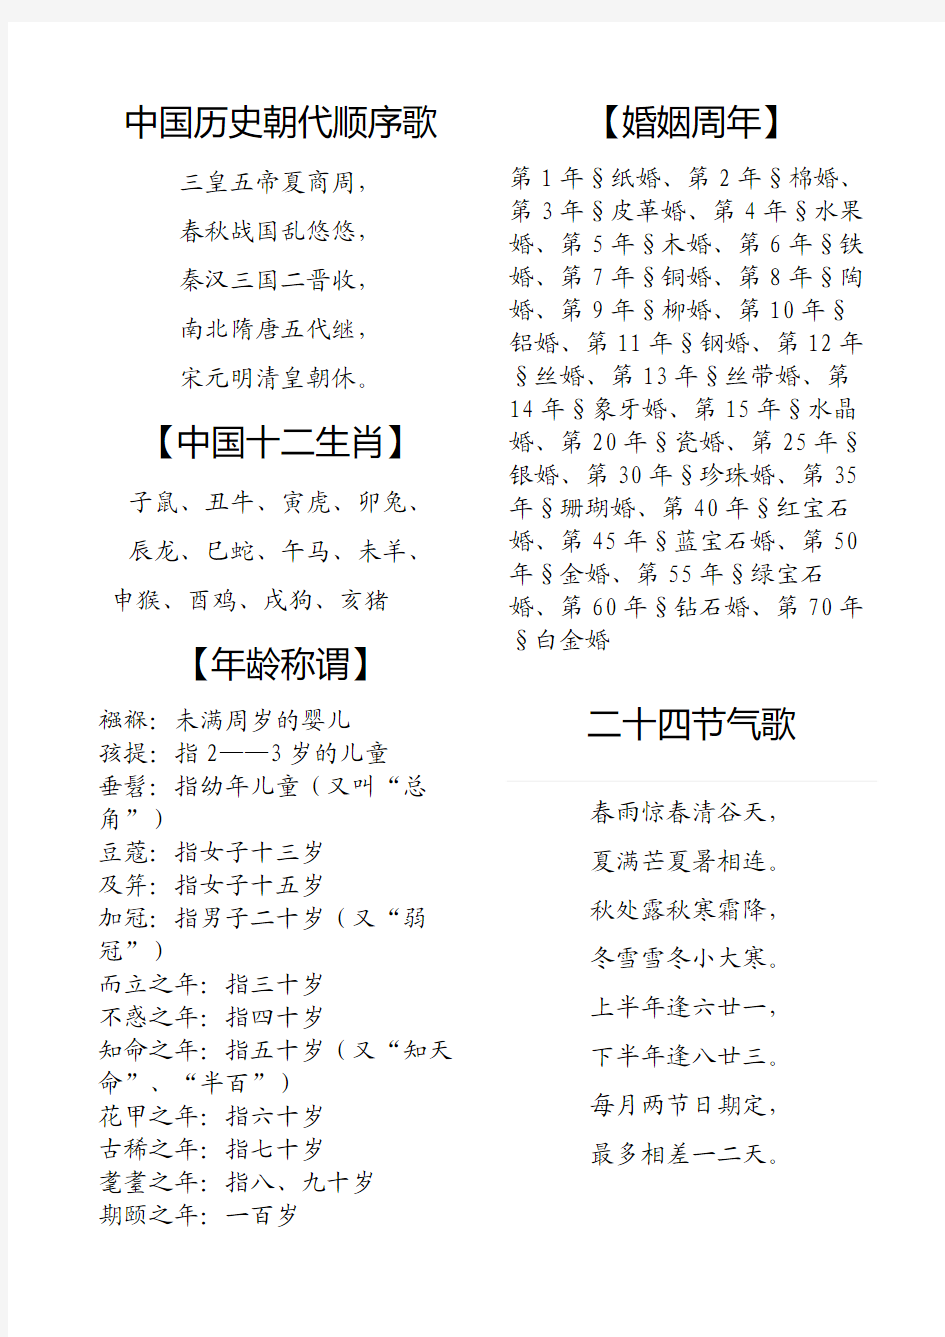 中国历史朝代顺序歌、二十四节气歌等(整理)